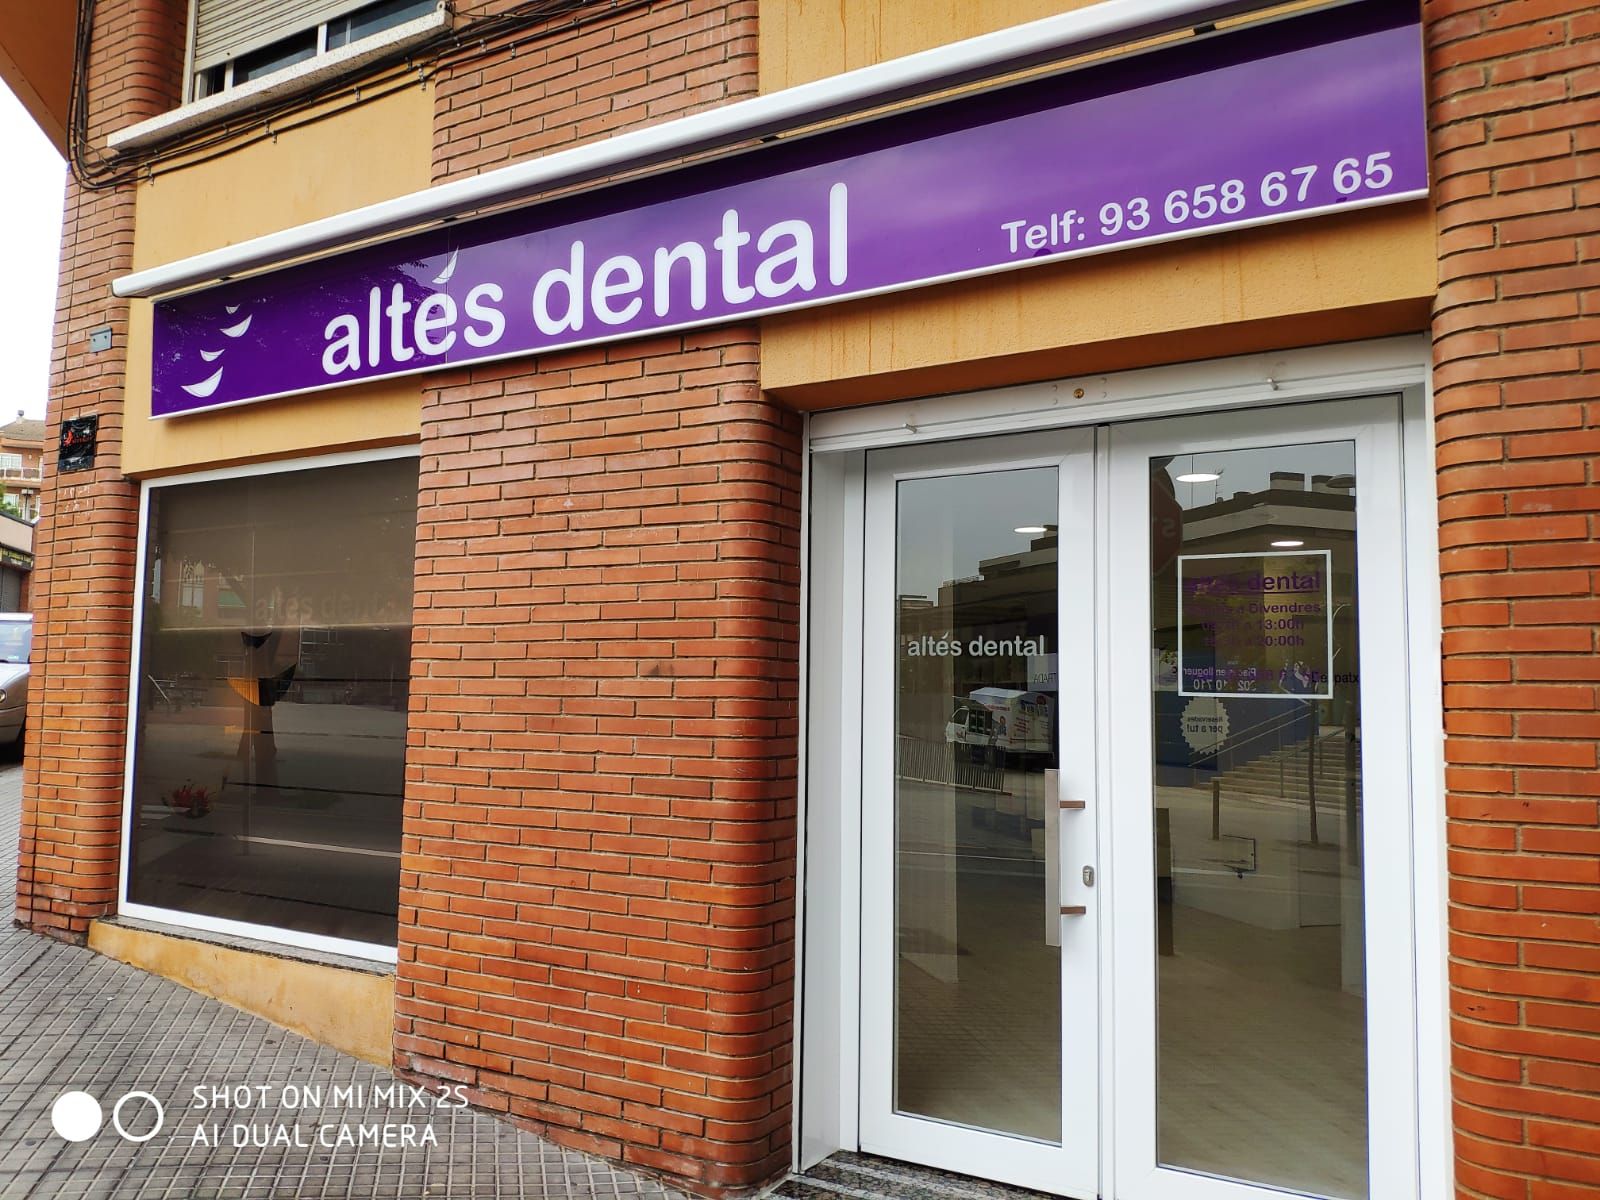 Blanqueamiento dental en Viladecans